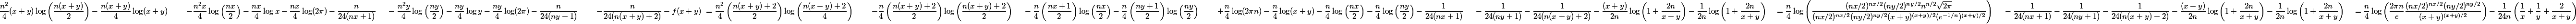 \begin{aligned} &\dfrac{n^2}{4}(x+y)\log\left(\dfrac{n(x+y)}{2}\right) - \dfrac{n(x+y)}{4}\log(x+y) \ &\quad - \dfrac{n^2x}{4}\log\left(\dfrac{nx}{2}\right) - \dfrac{nx}{4}\log x - \dfrac{nx}{4}\log(2\pi) - \dfrac{n}{24(nx+1)} \ &\quad - \dfrac{n^2y}{4}\log\left(\dfrac{ny}{2}\right) - \dfrac{ny}{4}\log y - \dfrac{ny}{4}\log(2\pi) - \dfrac{n}{24(ny+1)} \ &\quad - \dfrac{n}{24(n(x+y)+2)} - f(x+y) \ &= \dfrac{n^2}{4}\left(\dfrac{n(x+y)+2}{2}\right)\log\left(\dfrac{n(x+y)+2}{4}\right) \ &\quad - \dfrac{n}{4}\left(\dfrac{n(x+y)+2}{2}\right)\log\left(\dfrac{n(x+y)+2}{2}\right) \ &\quad - \dfrac{n}{4}\left(\dfrac{nx+1}{2}\right)\log\left(\dfrac{nx}{2}\right) - \dfrac{n}{4}\left(\dfrac{ny+1}{2}\right)\log\left(\dfrac{ny}{2}\right) \ &\quad + \dfrac{n}{4}\log(2\pi n) - \dfrac{n}{4}\log(x+y) - \dfrac{n}{4}\log\left(\dfrac{nx}{2}\right) - \dfrac{n}{4}\log\left(\dfrac{ny}{2}\right) - \dfrac{1}{24(nx+1)} \ &\quad - \dfrac{1}{24(ny+1)} - \dfrac{1}{24(n(x+y)+2)} - \dfrac{(x+y)}{2n}\log\left(1+\dfrac{2n}{x+y}\right) - \dfrac{1}{2n}\log\left(1+\dfrac{2n}{x+y}\right) \ &= \dfrac{n}{4}\log\left(\dfrac{(nx/2)^{nx/2}(ny/2)^{ny/2}n^{n/2}\sqrt{2\pi}}{(nx/2)^{nx/2}(ny/2)^{ny/2}(x+y)^{(x+y)/2}(e^{-1/n})^{(x+y)/2}}\right) \ &\quad - \dfrac{1}{24(nx+1)} - \dfrac{1}{24(ny+1)} - \dfrac{1}{24(n(x+y)+2)} - \dfrac{(x+y)}{2n}\log\left(1+\dfrac{2n}{x+y}\right) - \dfrac{1}{2n}\log\left(1+\dfrac{2n}{x+y}\right) \ &=\dfrac{n}{4}\log\left(\dfrac{2\pi n}{e}\dfrac{(nx/2)^{nx/2}(ny/2)^{ny/2}}{(x+y)^{(x+y)/2}}\right) - \dfrac{1}{24n}\left(\dfrac{1}{x}+\dfrac{1}{y}+\dfrac{2}{x+y}\right) \end{aligned}